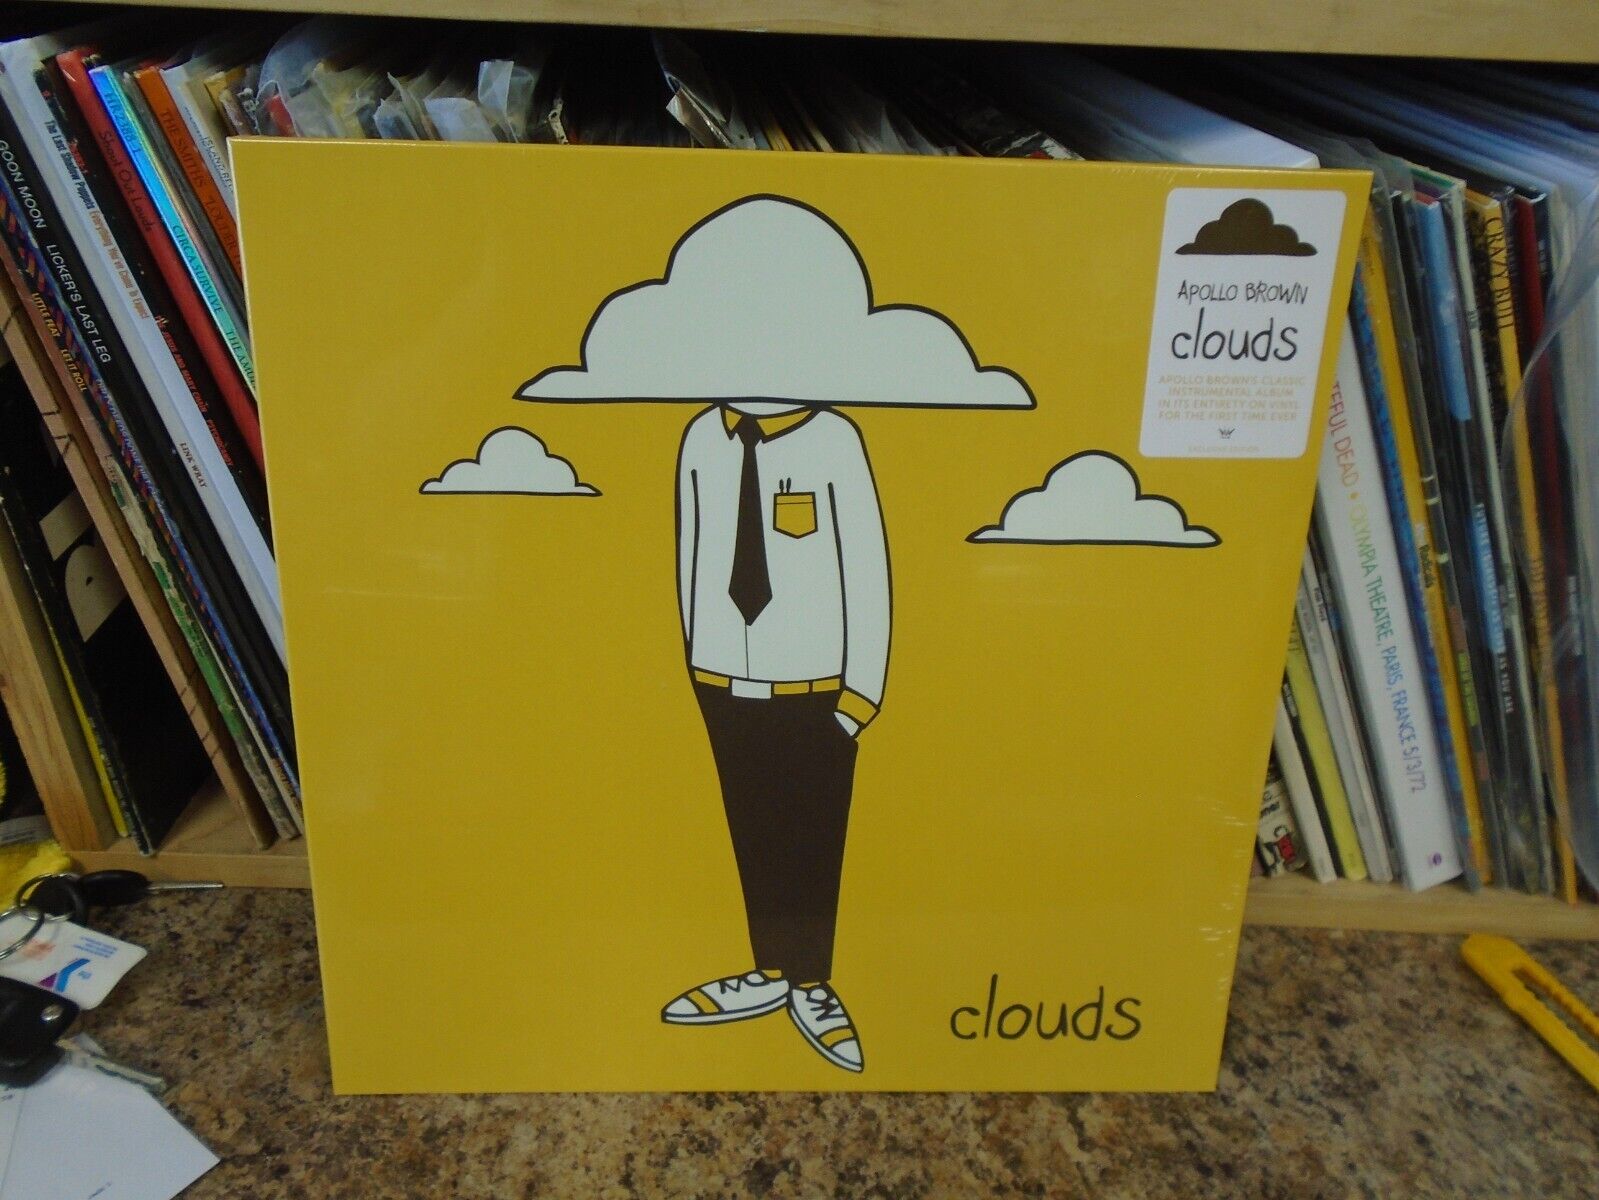 Apollo Brown Clouds LP NEW GOLD SWIRL vinyl underground hip hop Oddisee